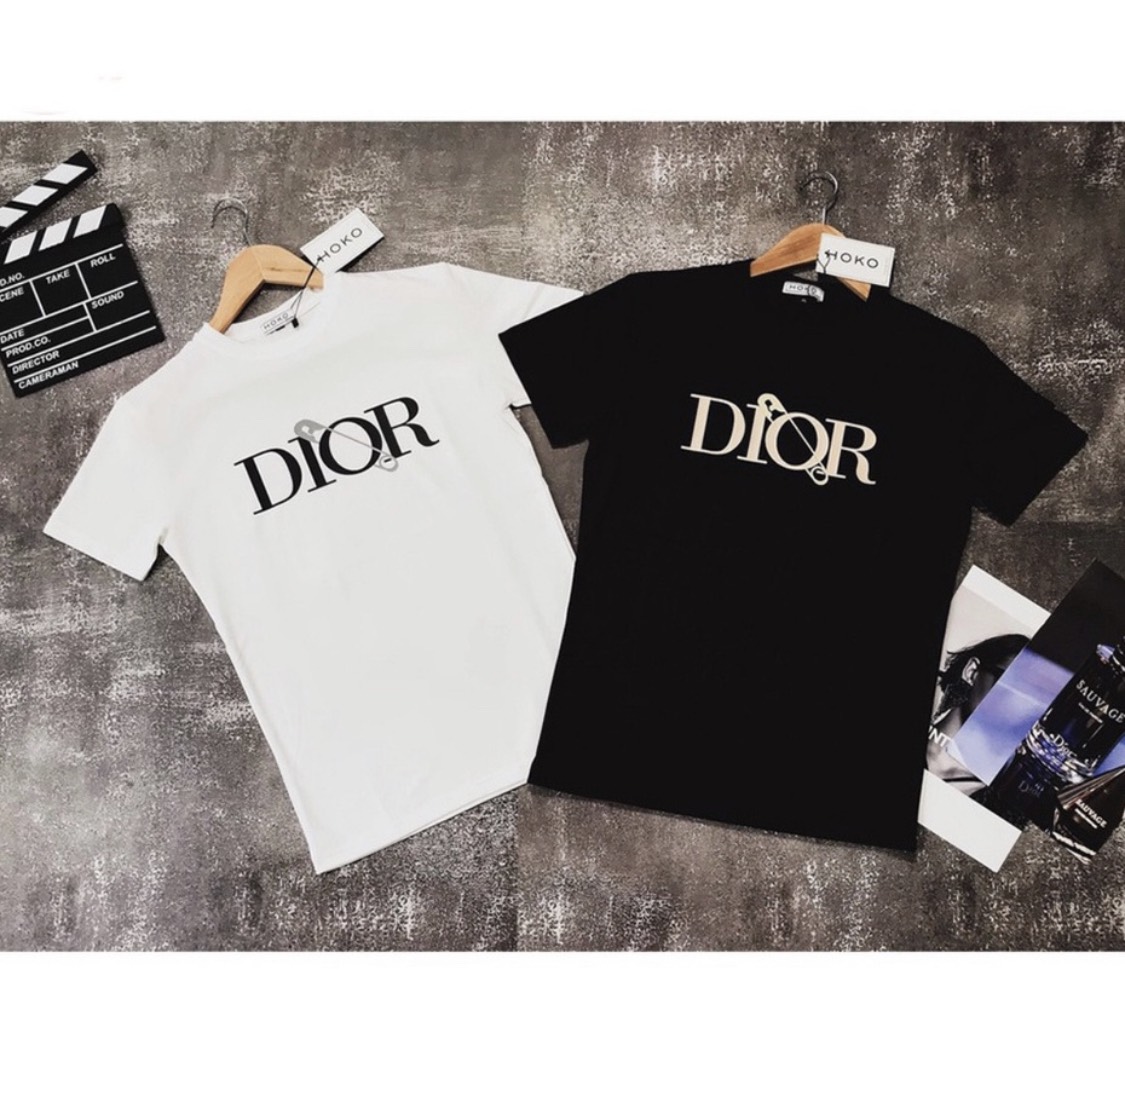 Dior  Shirts  Dior Men X Judy Blame Safety Clip T Shirt Xlarge  Poshmark